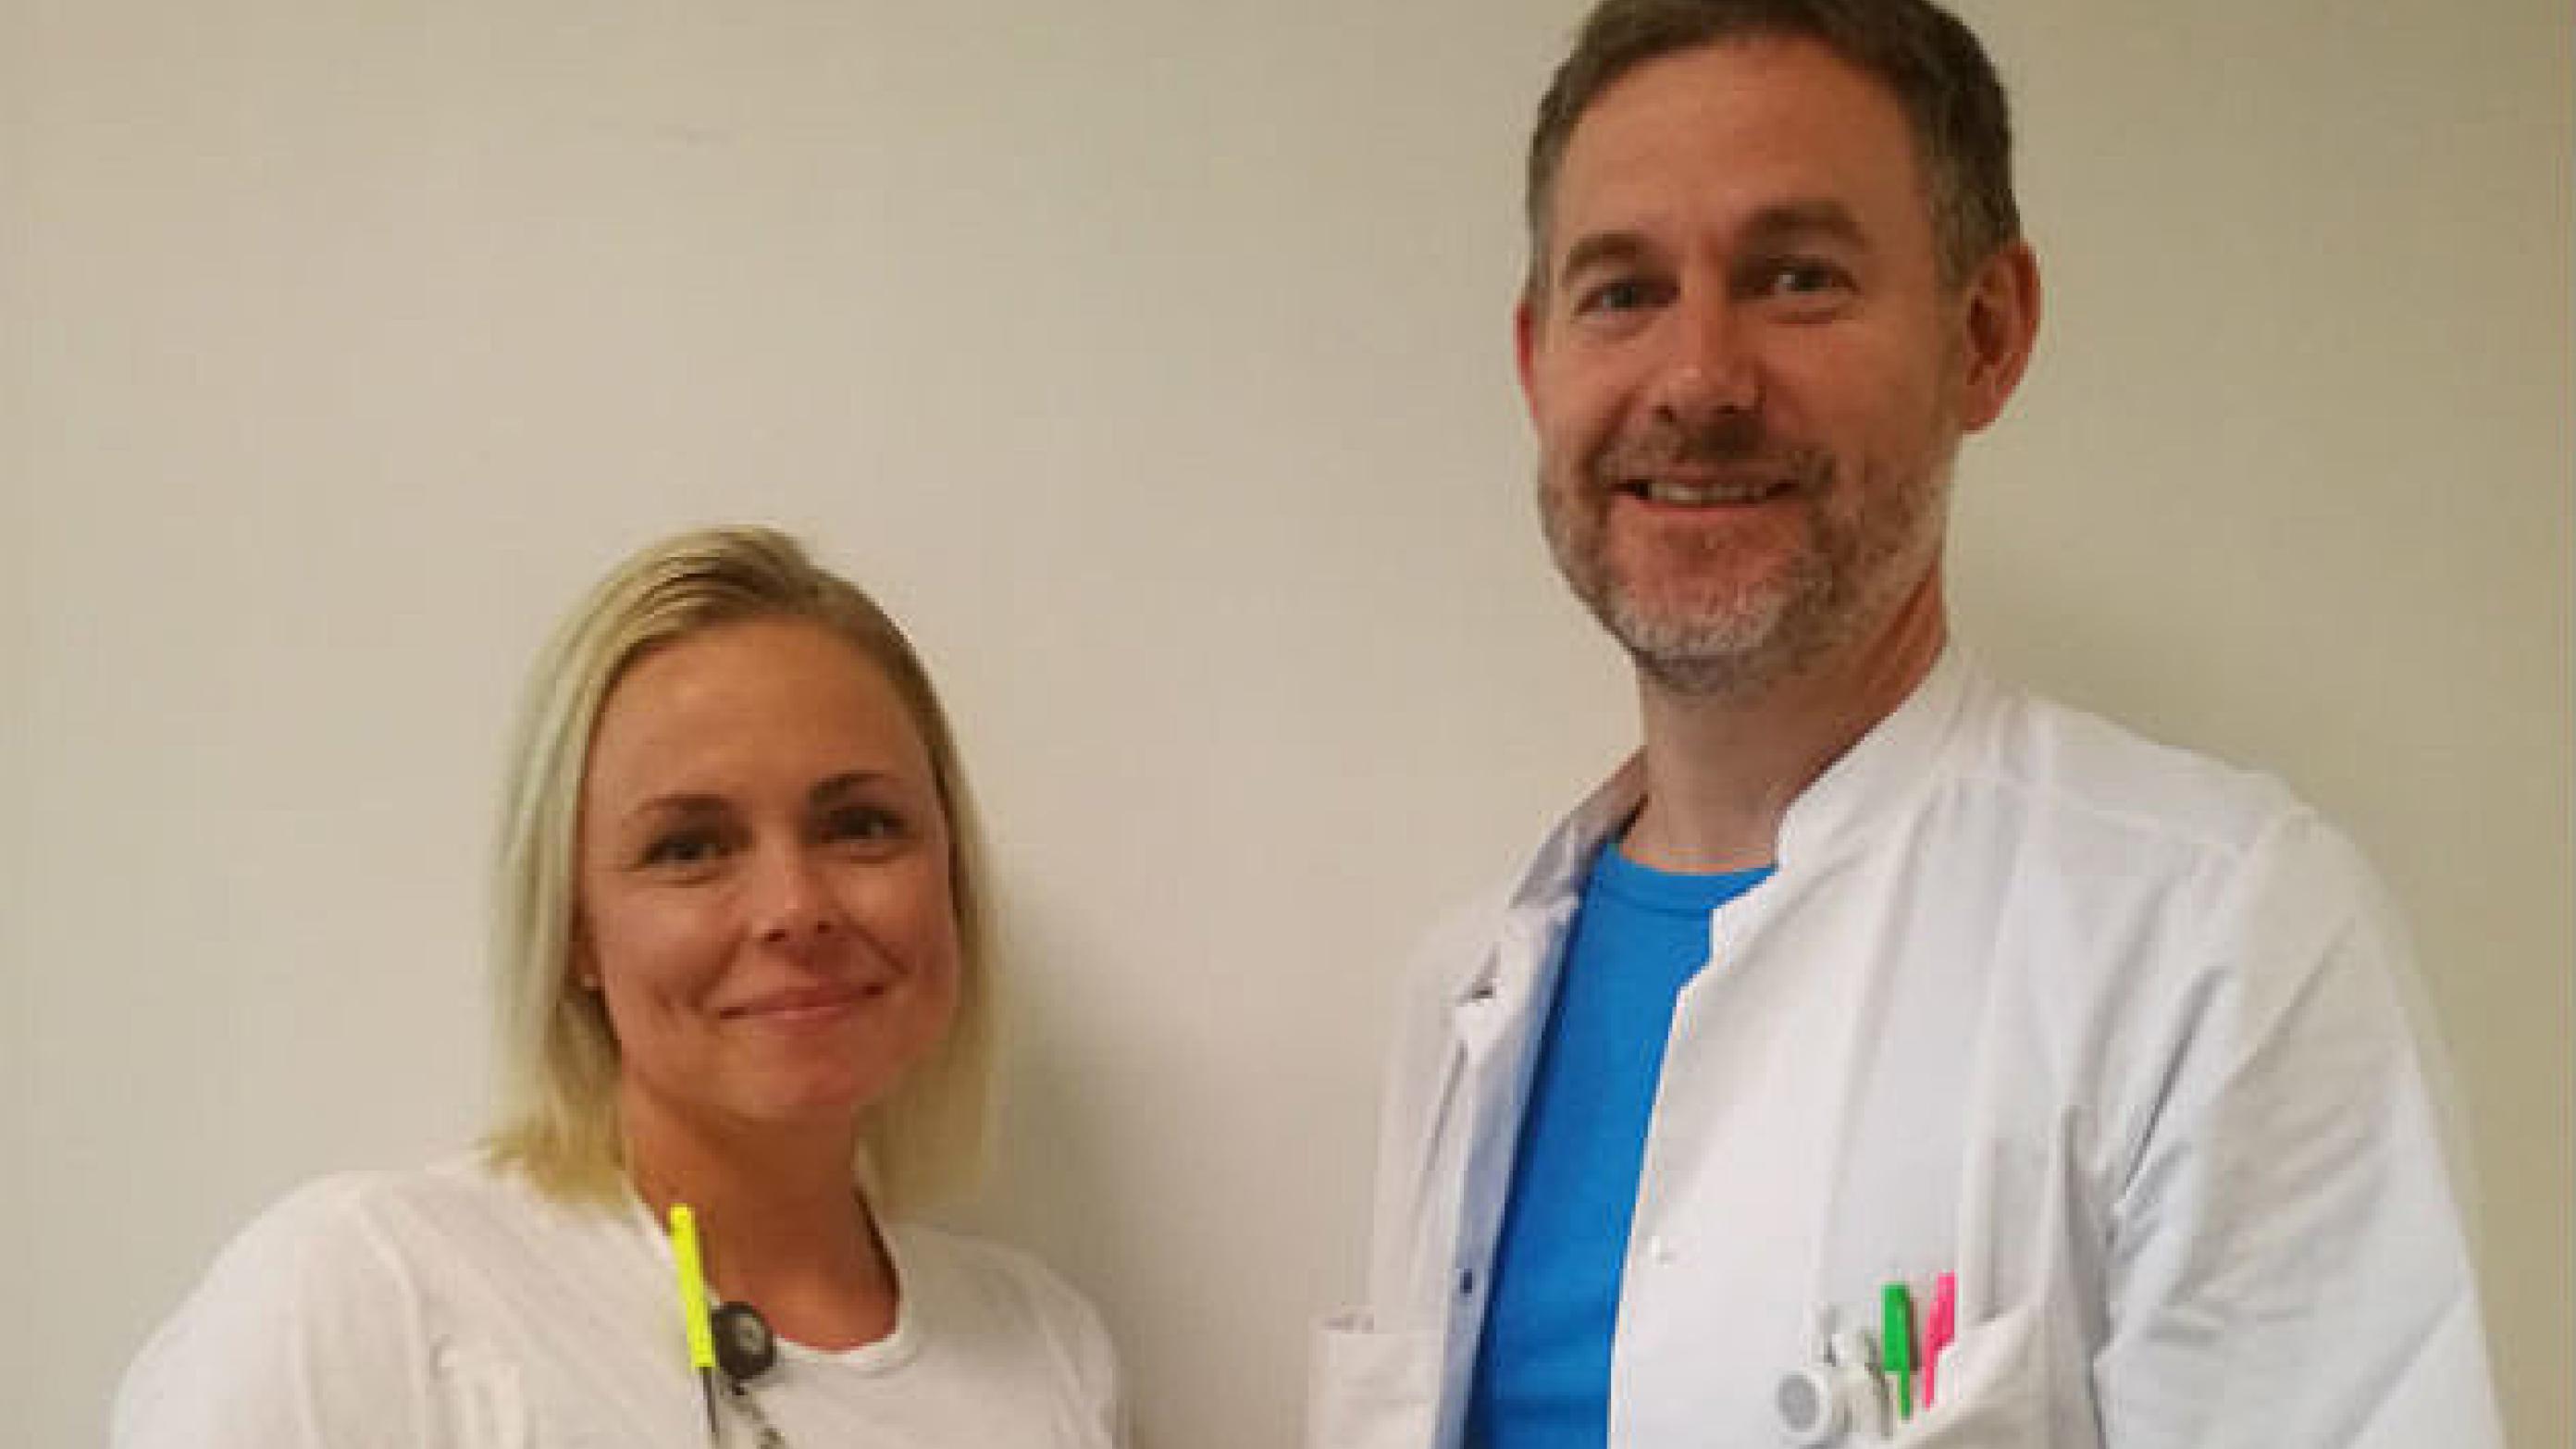 Sygeplejerske Stine Boie og ledende overlæge Dan Brun Petersen, begge fra akutmodtagelsen i Køge medvirker i Ugeskriftets podcast om travlhed, tjeklister og tillid i en nogle gange voldsomt travl hverdag.